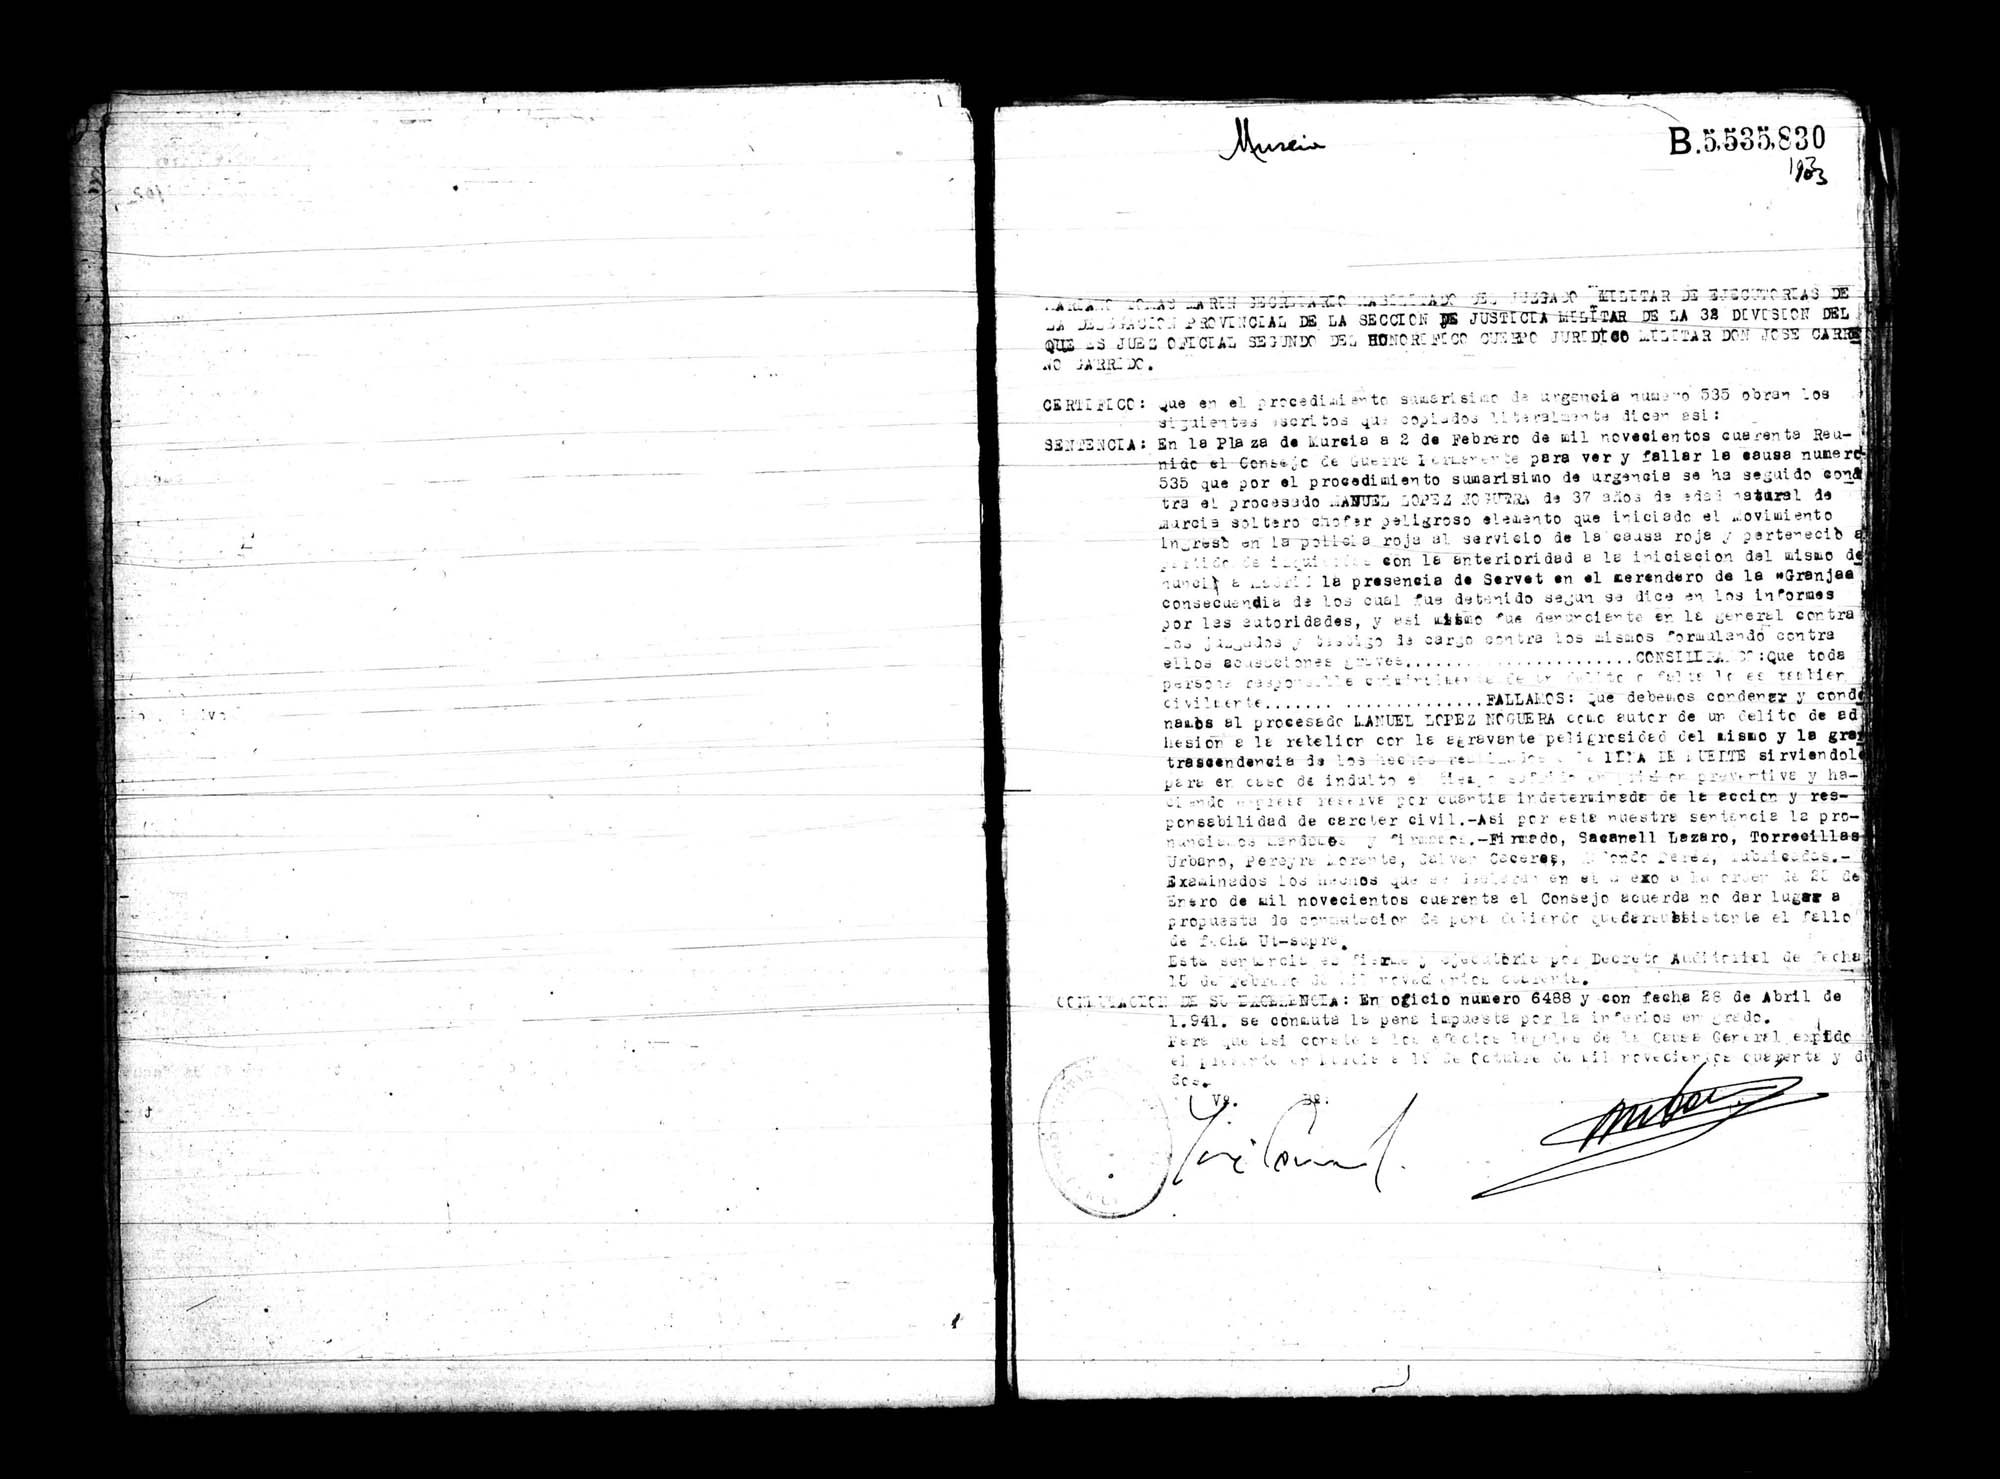 Certificado de la sentencia pronunciada contra Manuel López Noguera, causa 535, el 2 de febrero de 1940 en Murcia.